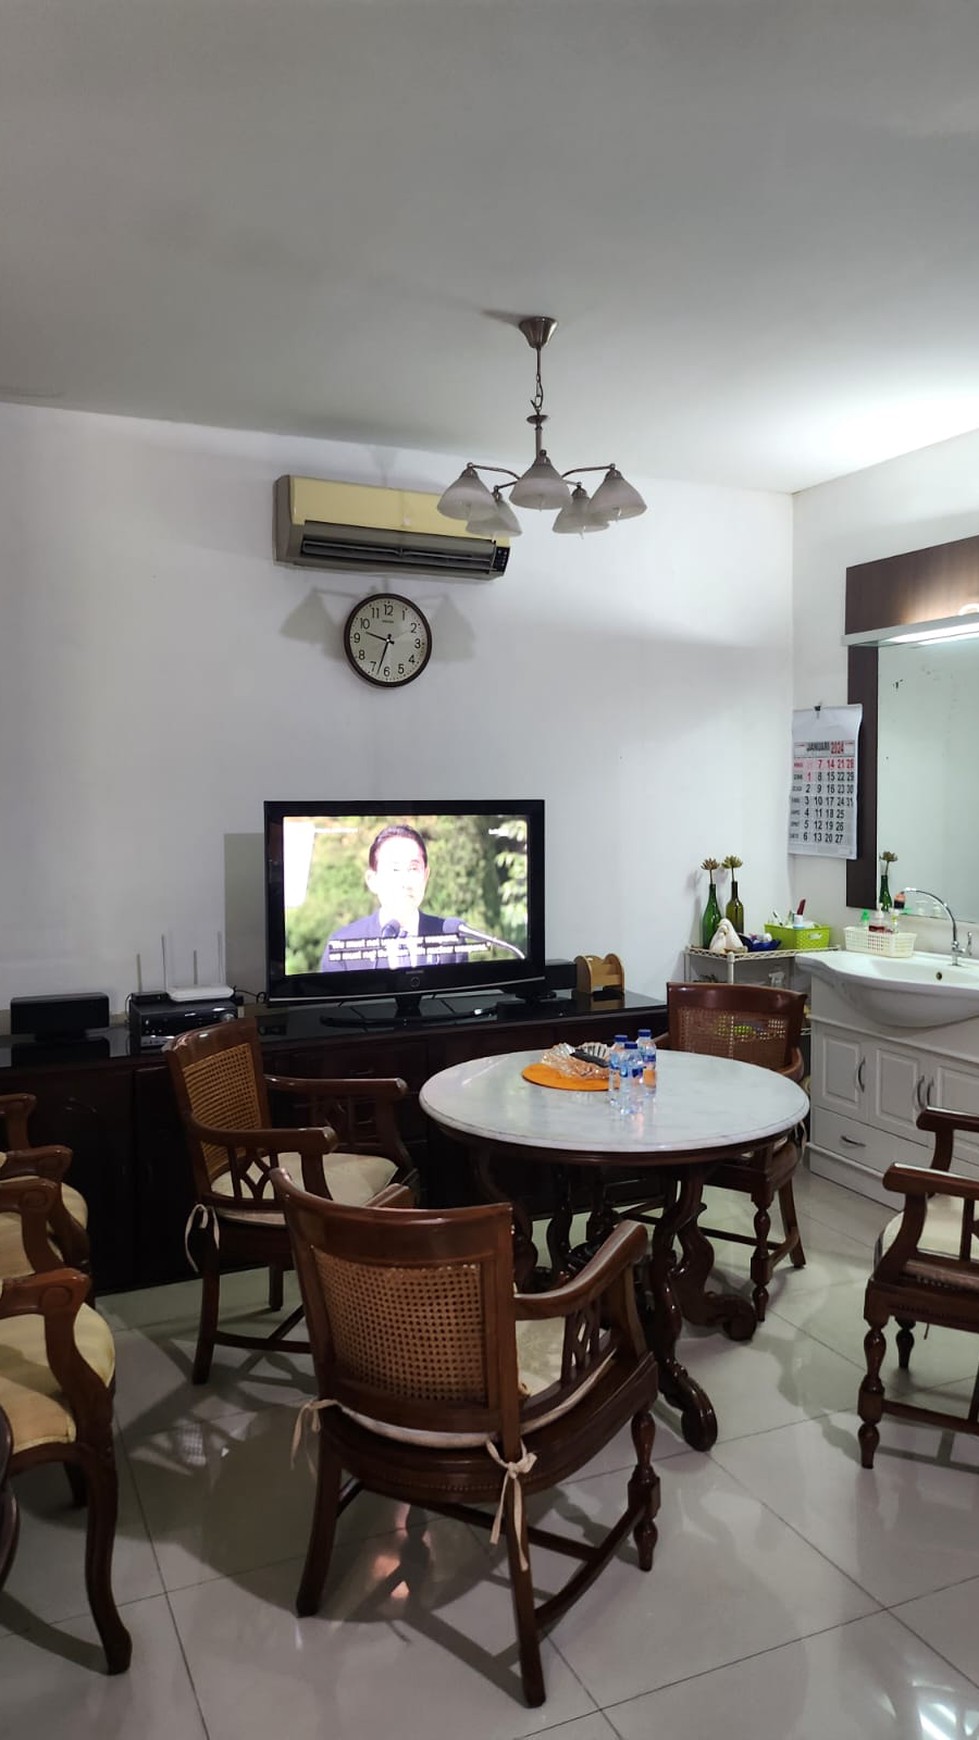 Rumah Bagus Di Komp Orchid Bintaro Pondok Aren Tangerang Selatan